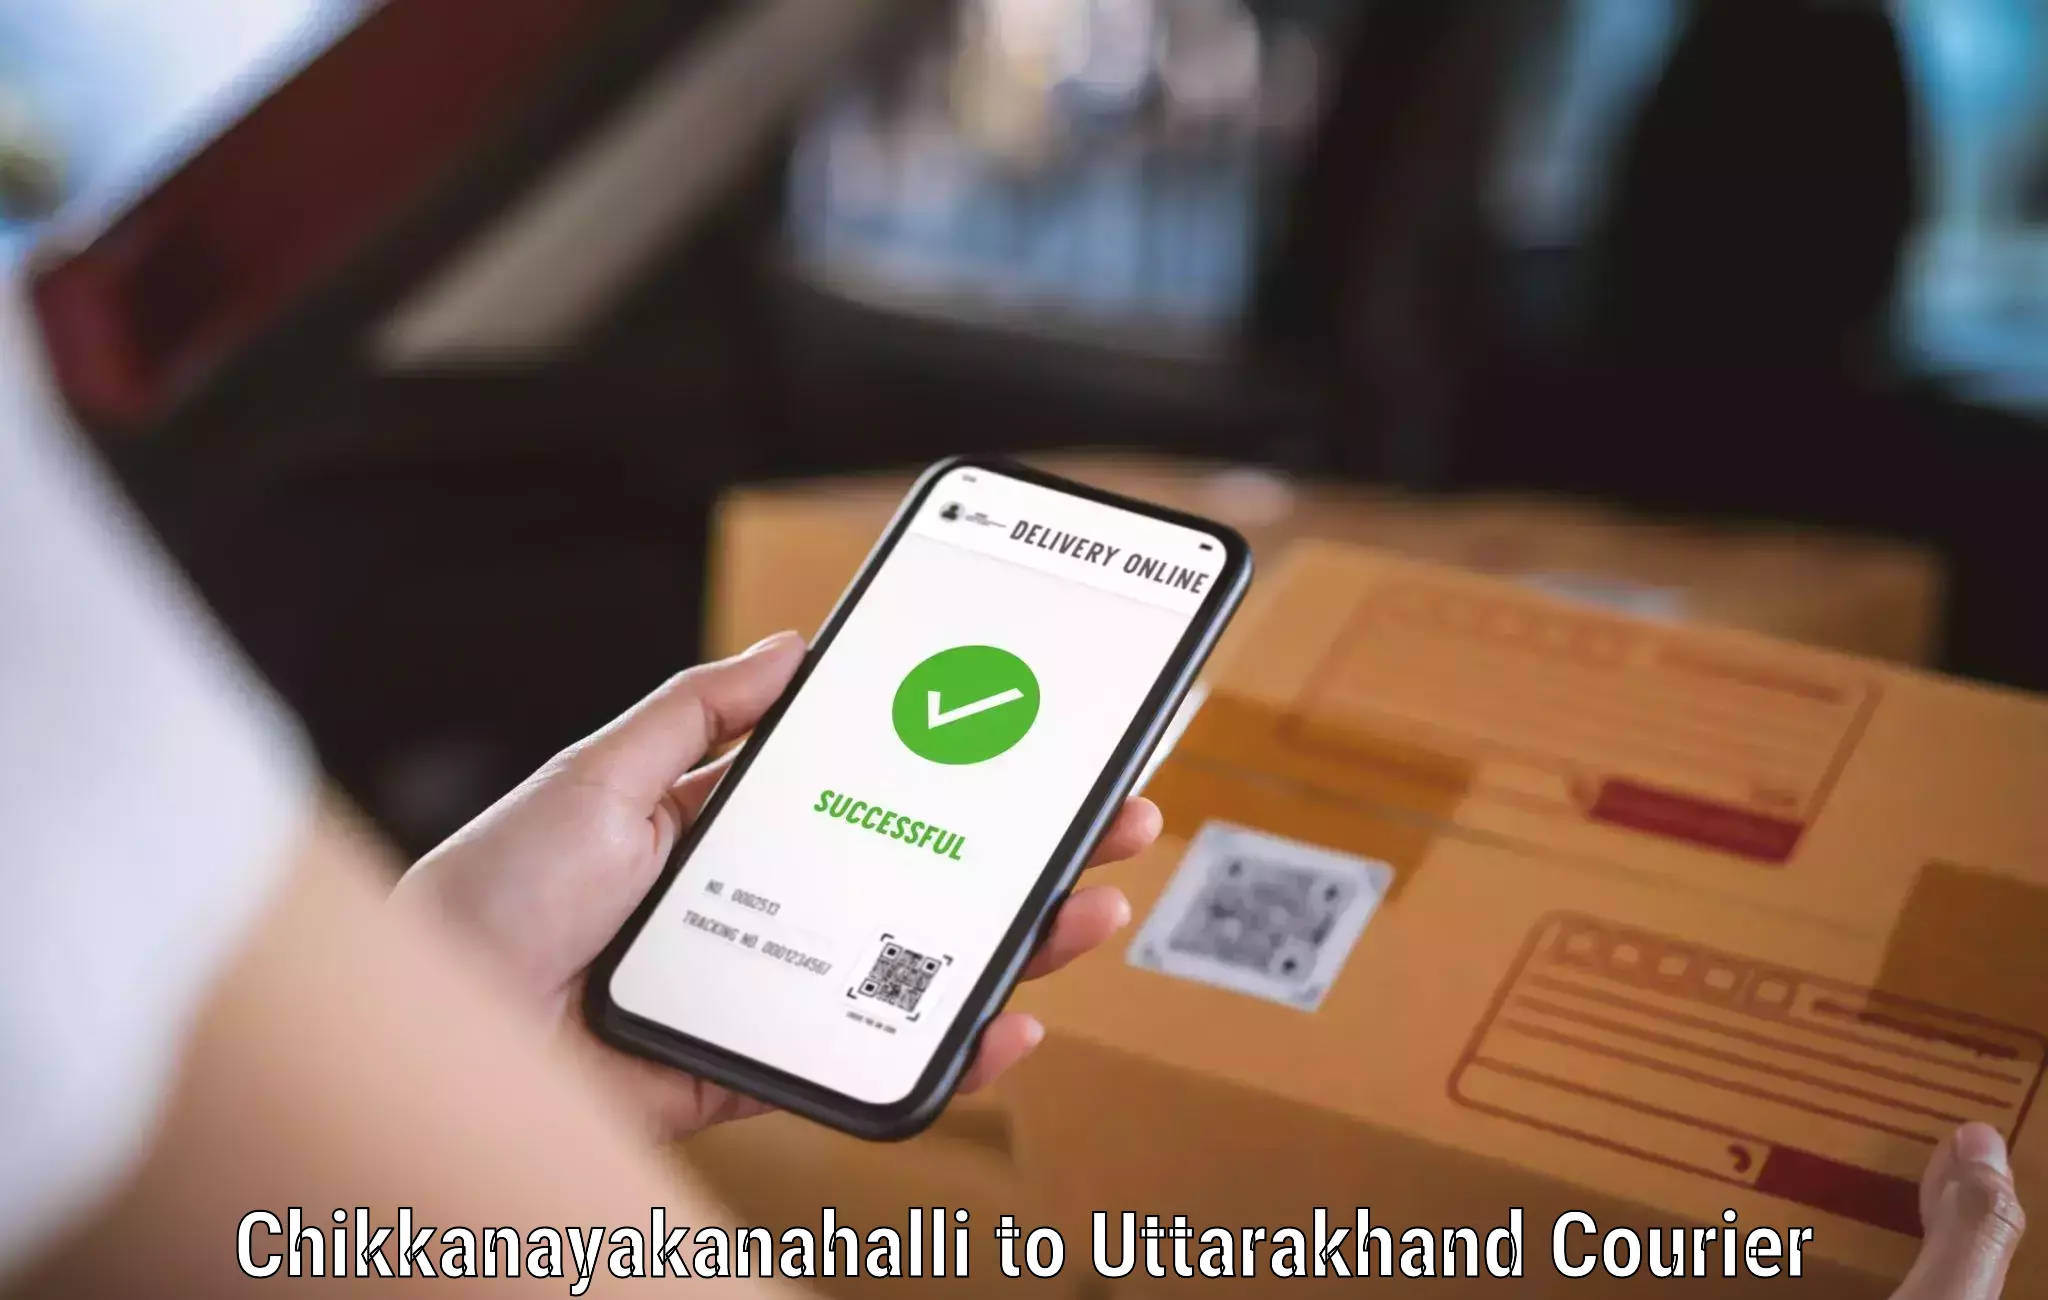 Urgent courier needs Chikkanayakanahalli to Someshwar